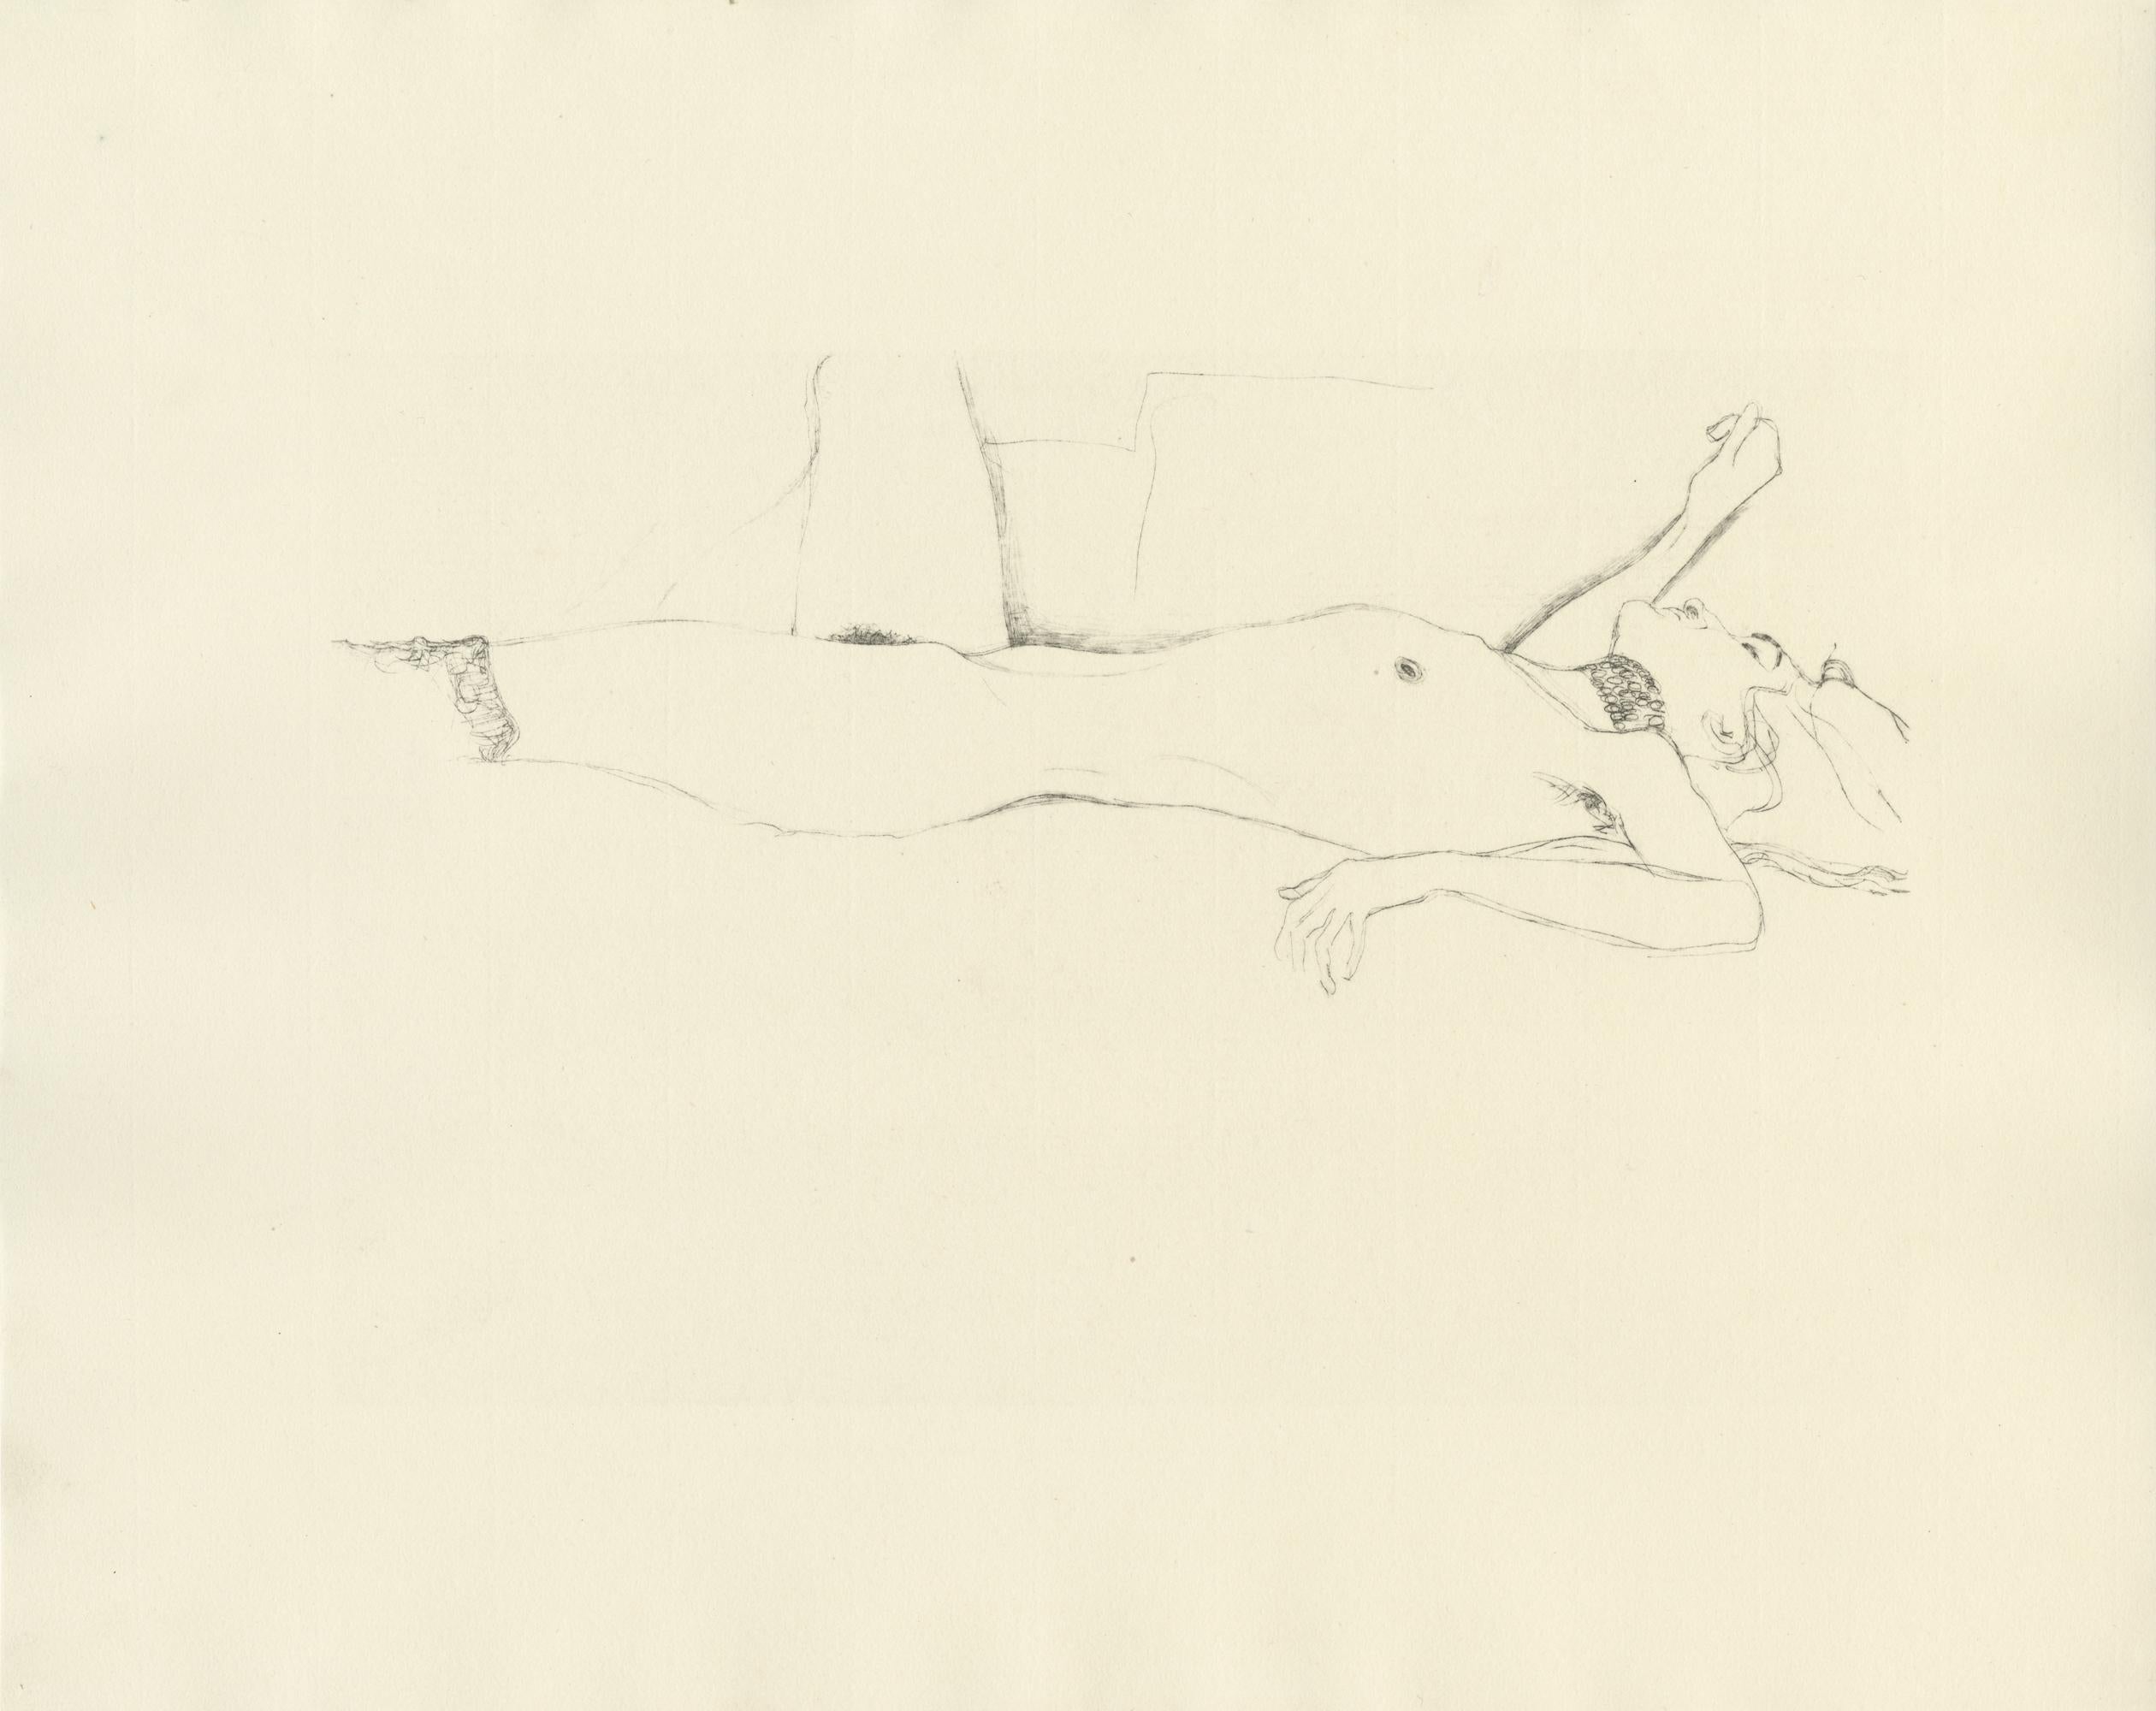 Planche n° 7 du portfolio "Dialogues des courtisanes" de Gustav Klimt de 1907, composé de 15 collotypes sur papier japon crème. Les dessins de ce folio seraient des études pour les célèbres tableaux de Klimt, les Serpents d'eau. 

Cette estampe